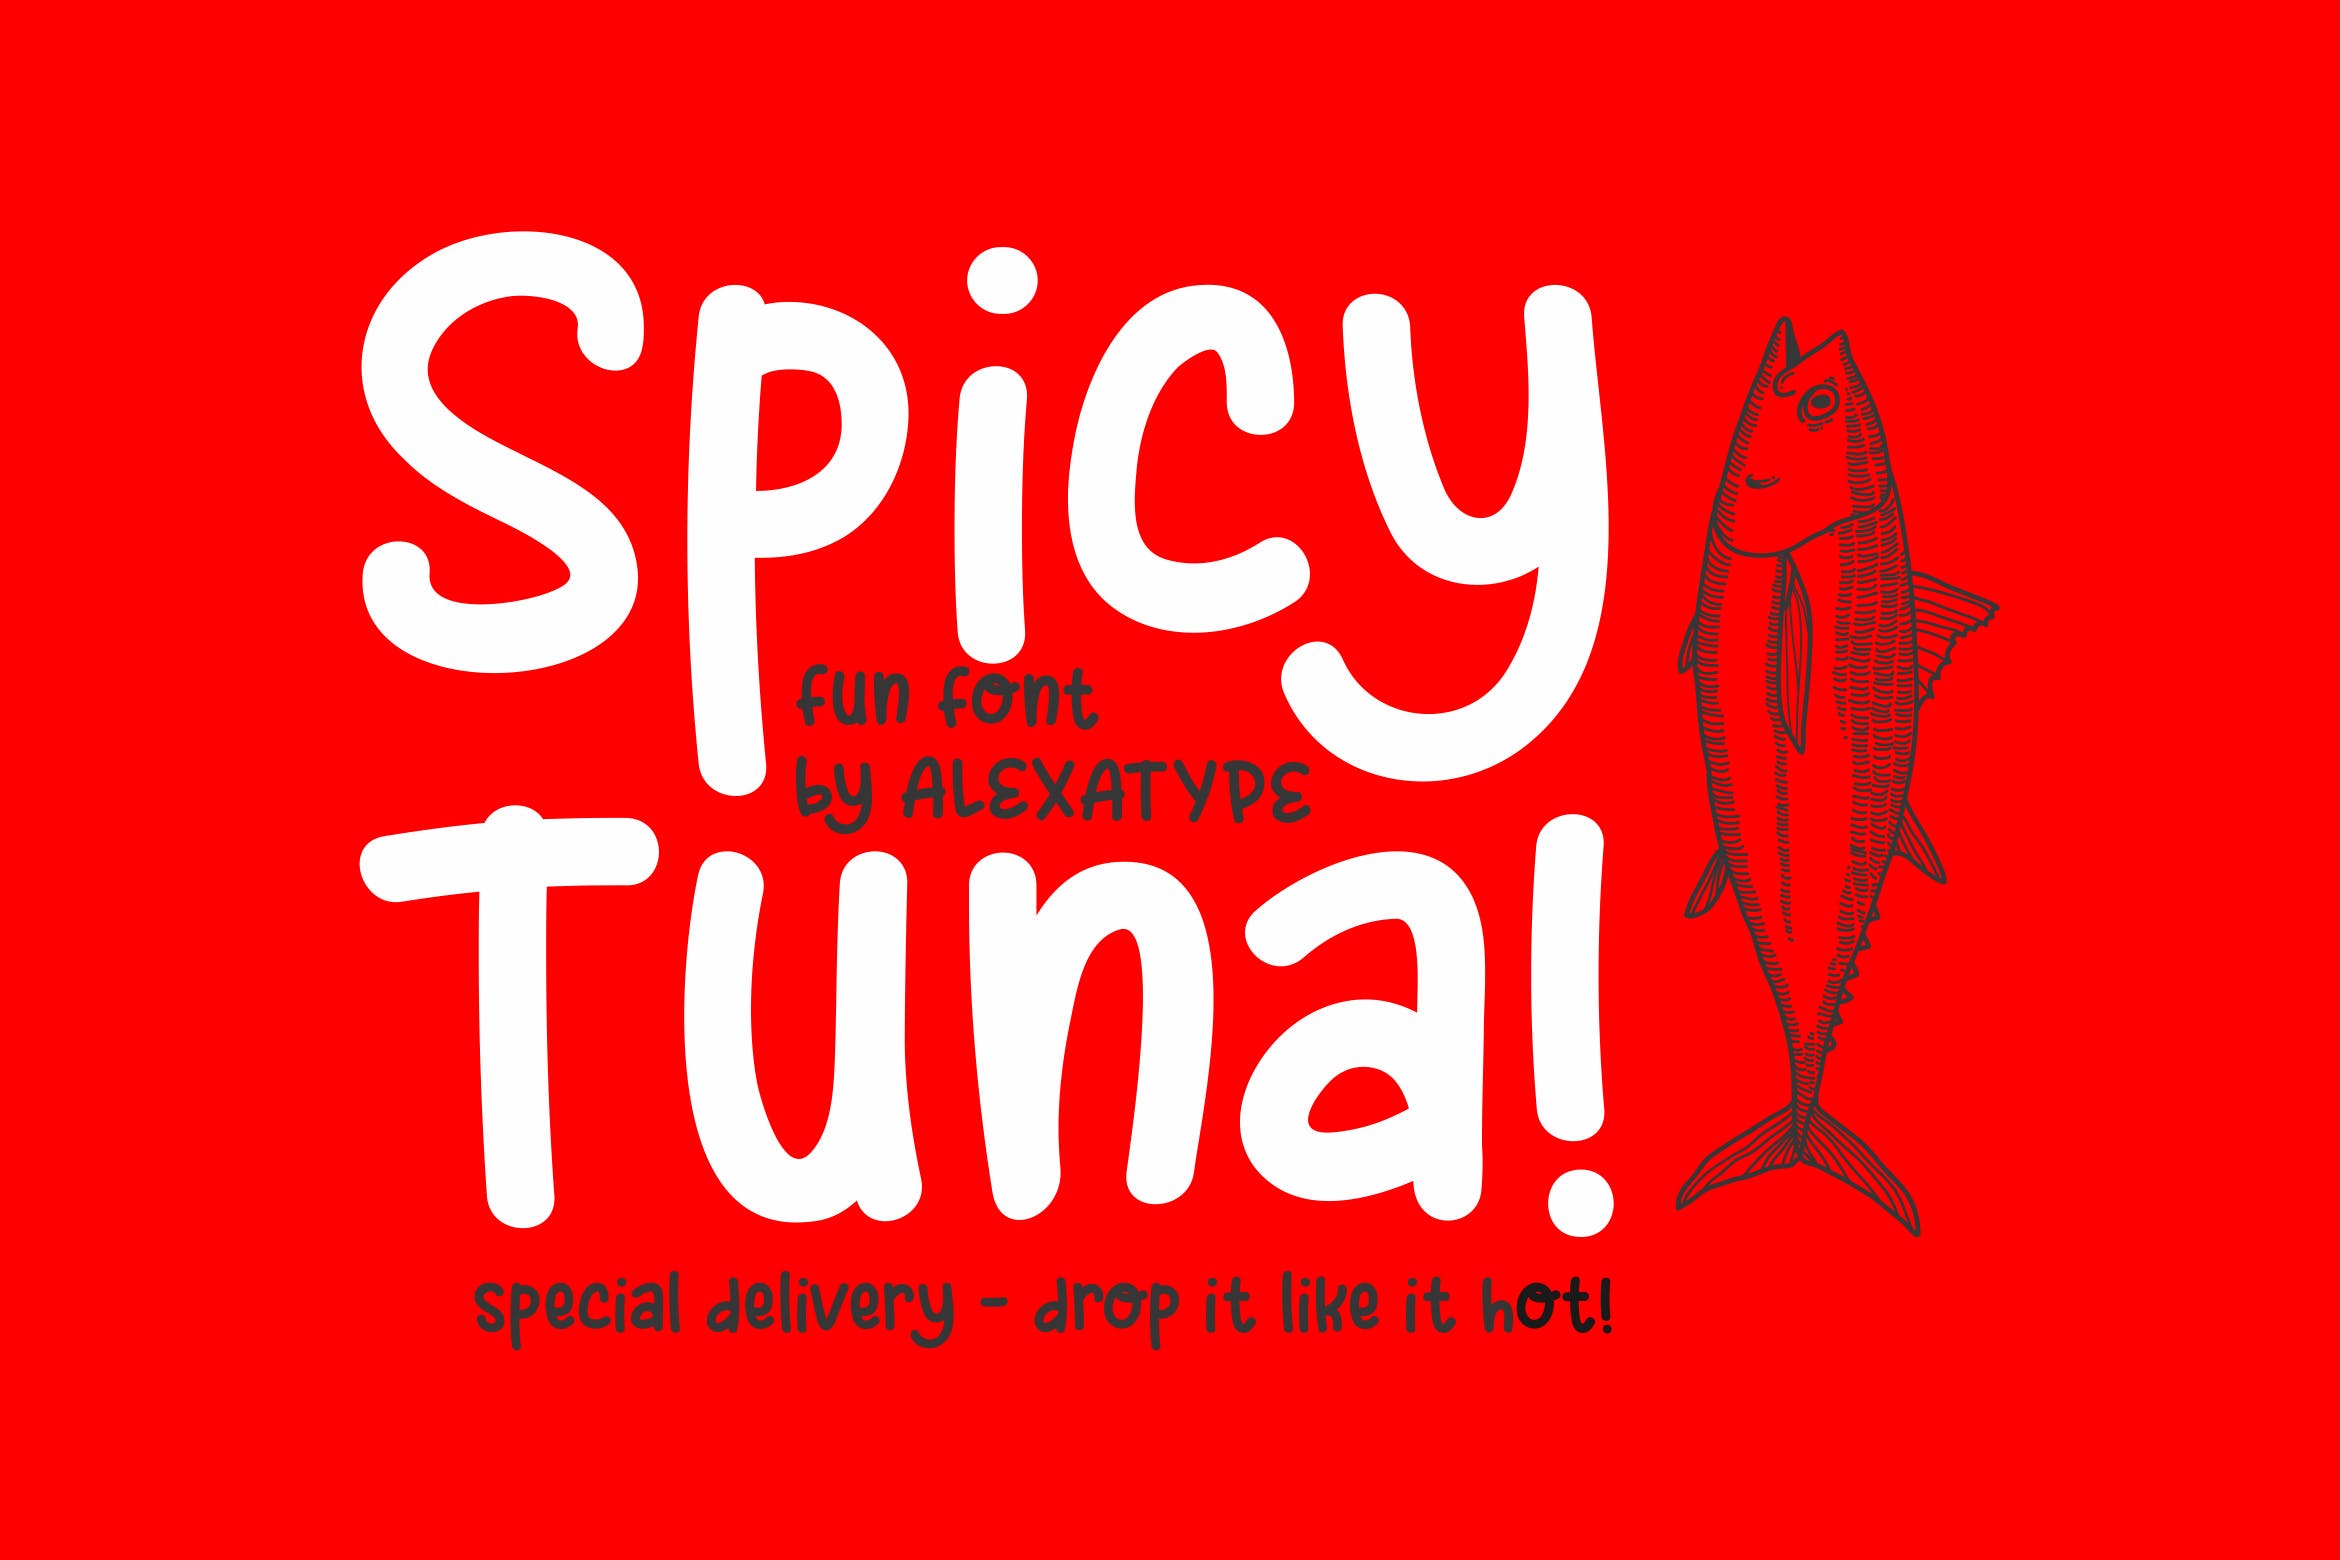 可爱风格英文儿童字体素材库精选下载 Spicy Tuna – Fun Children Font插图